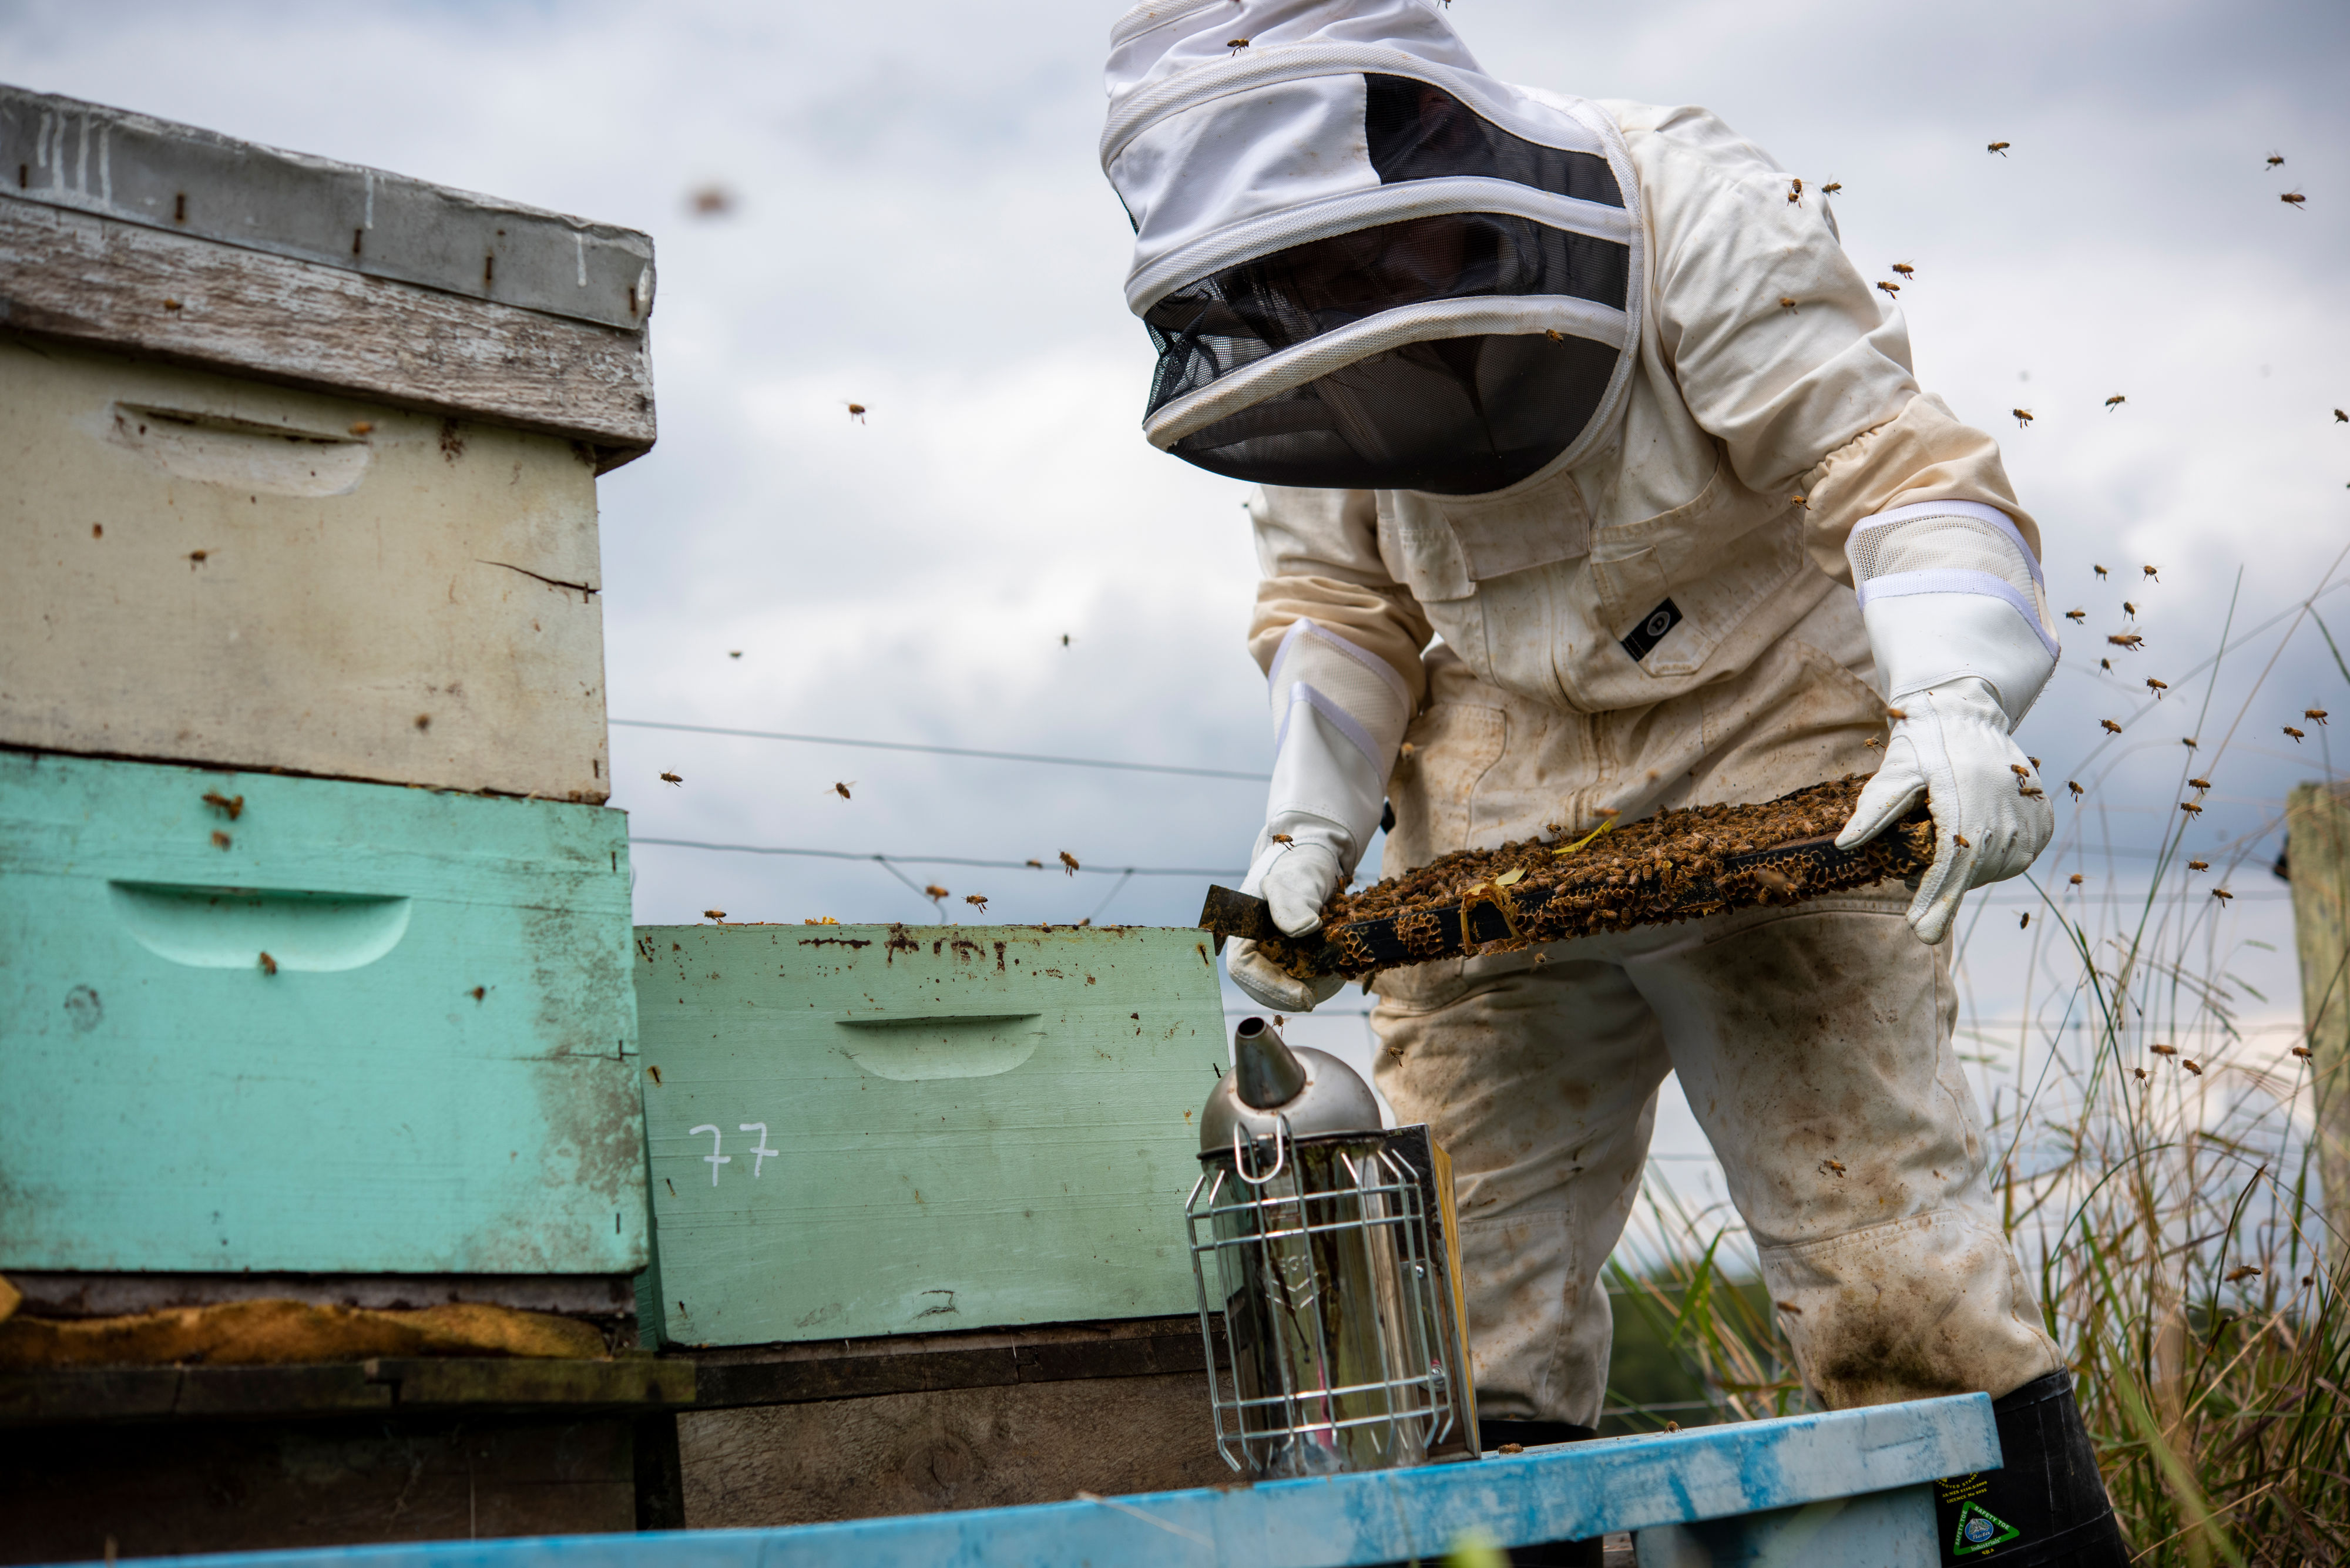 apiculture